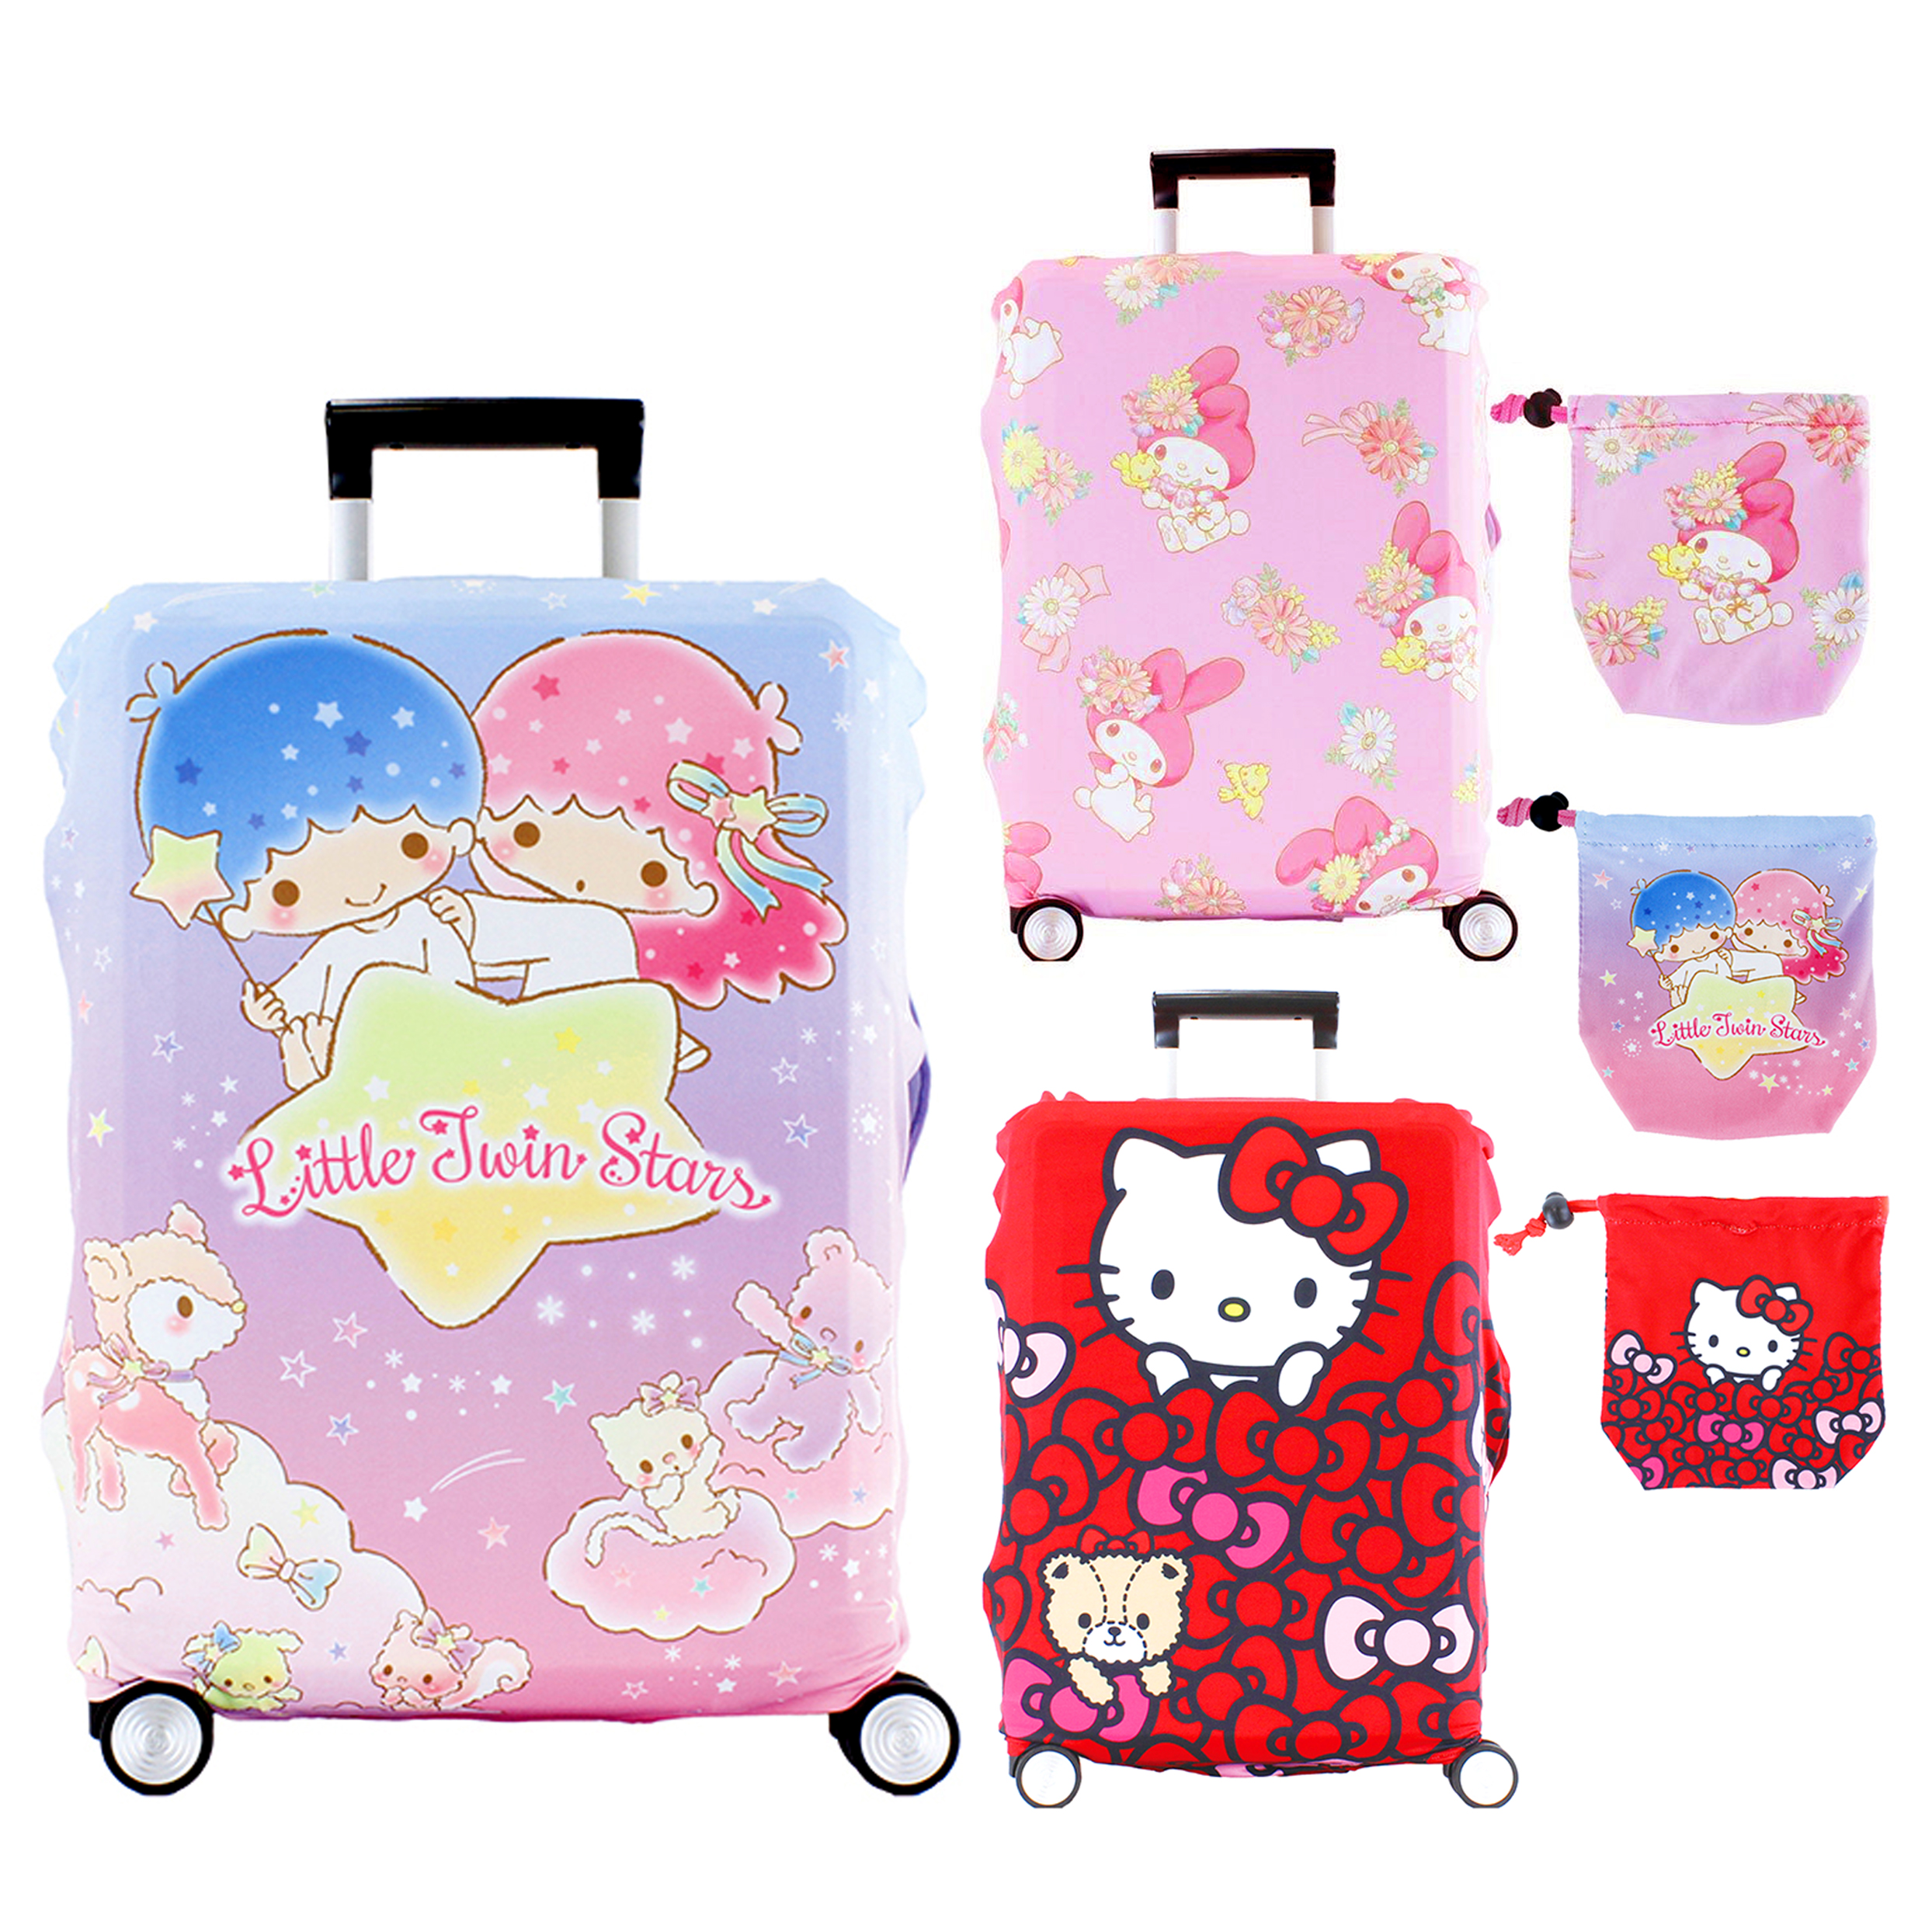 旅行箱保護套 三麗鷗 Hello Kitty 美樂蒂 雙子星 3款 防塵套 出國 日本進口正版授權